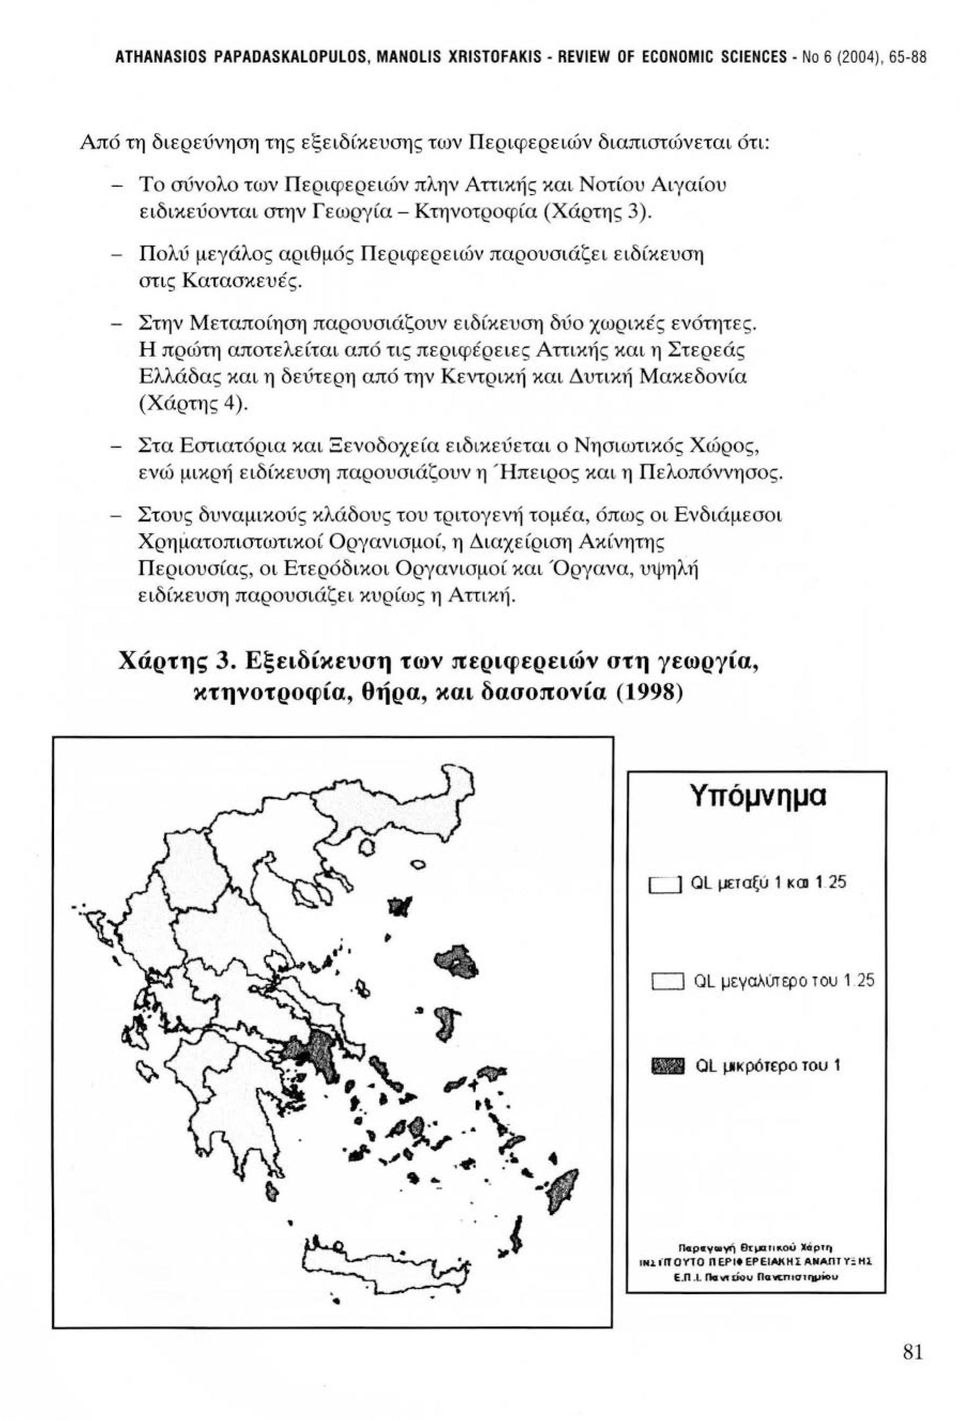 - Στην Μεταποίηση παρουσιάζουν ειδίκευση δύο χωρικές ενότητες. Η πρώτη αποτελείται από τις περιφέρειες Αττικής και η Στερεάς Ελλάδας και η δεύτερη από την Κεντρική και Δυτική Μακεδονία (Χάρτης 4).